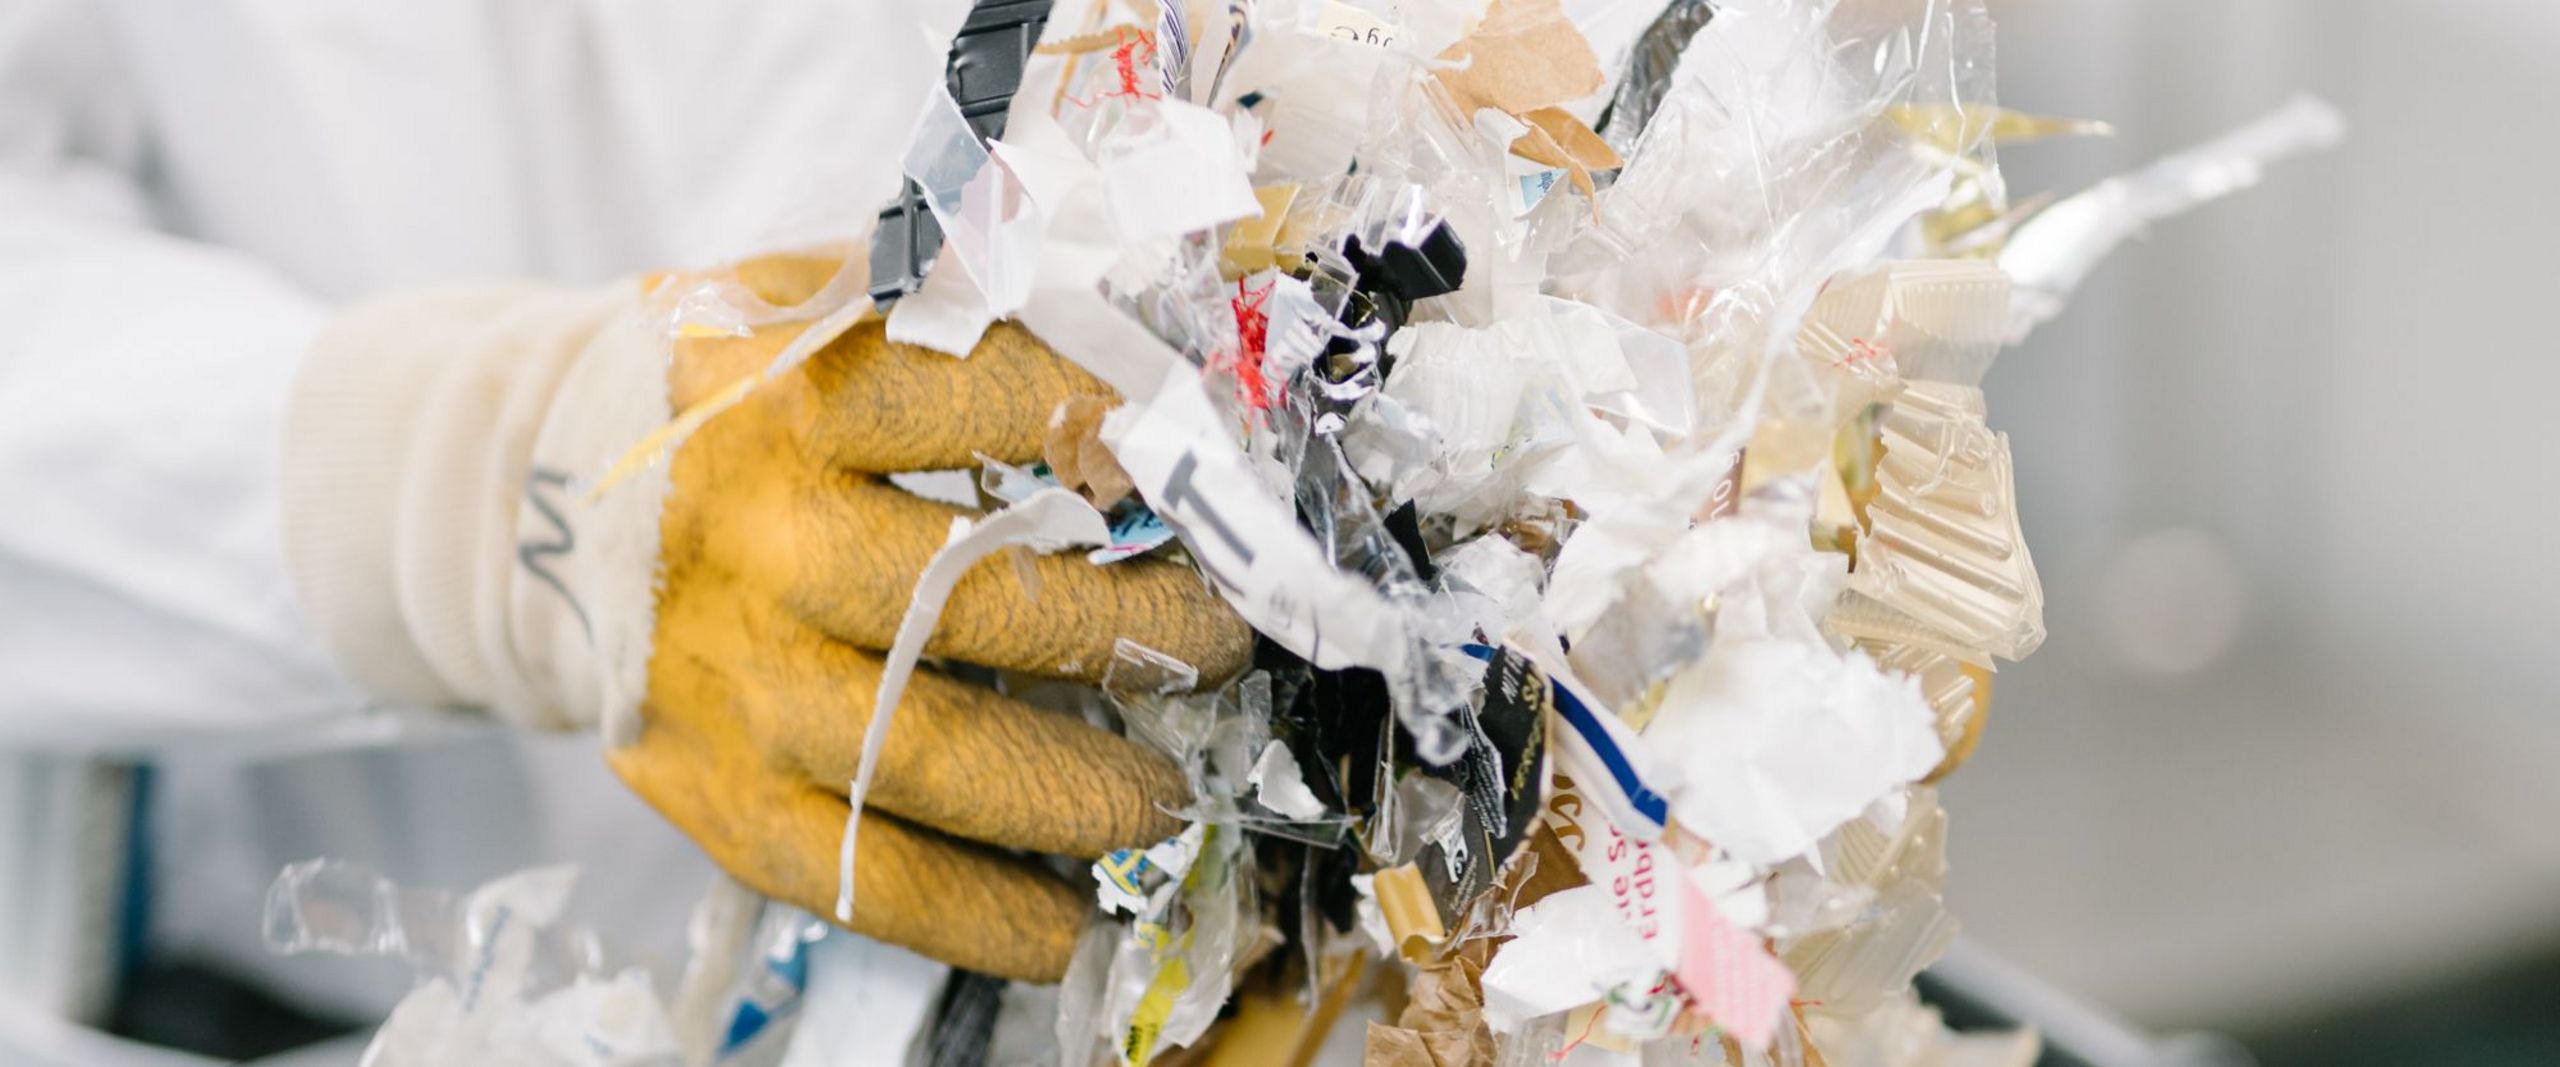 Person in Kittel und Handschuhen hält geschredderten Müll.